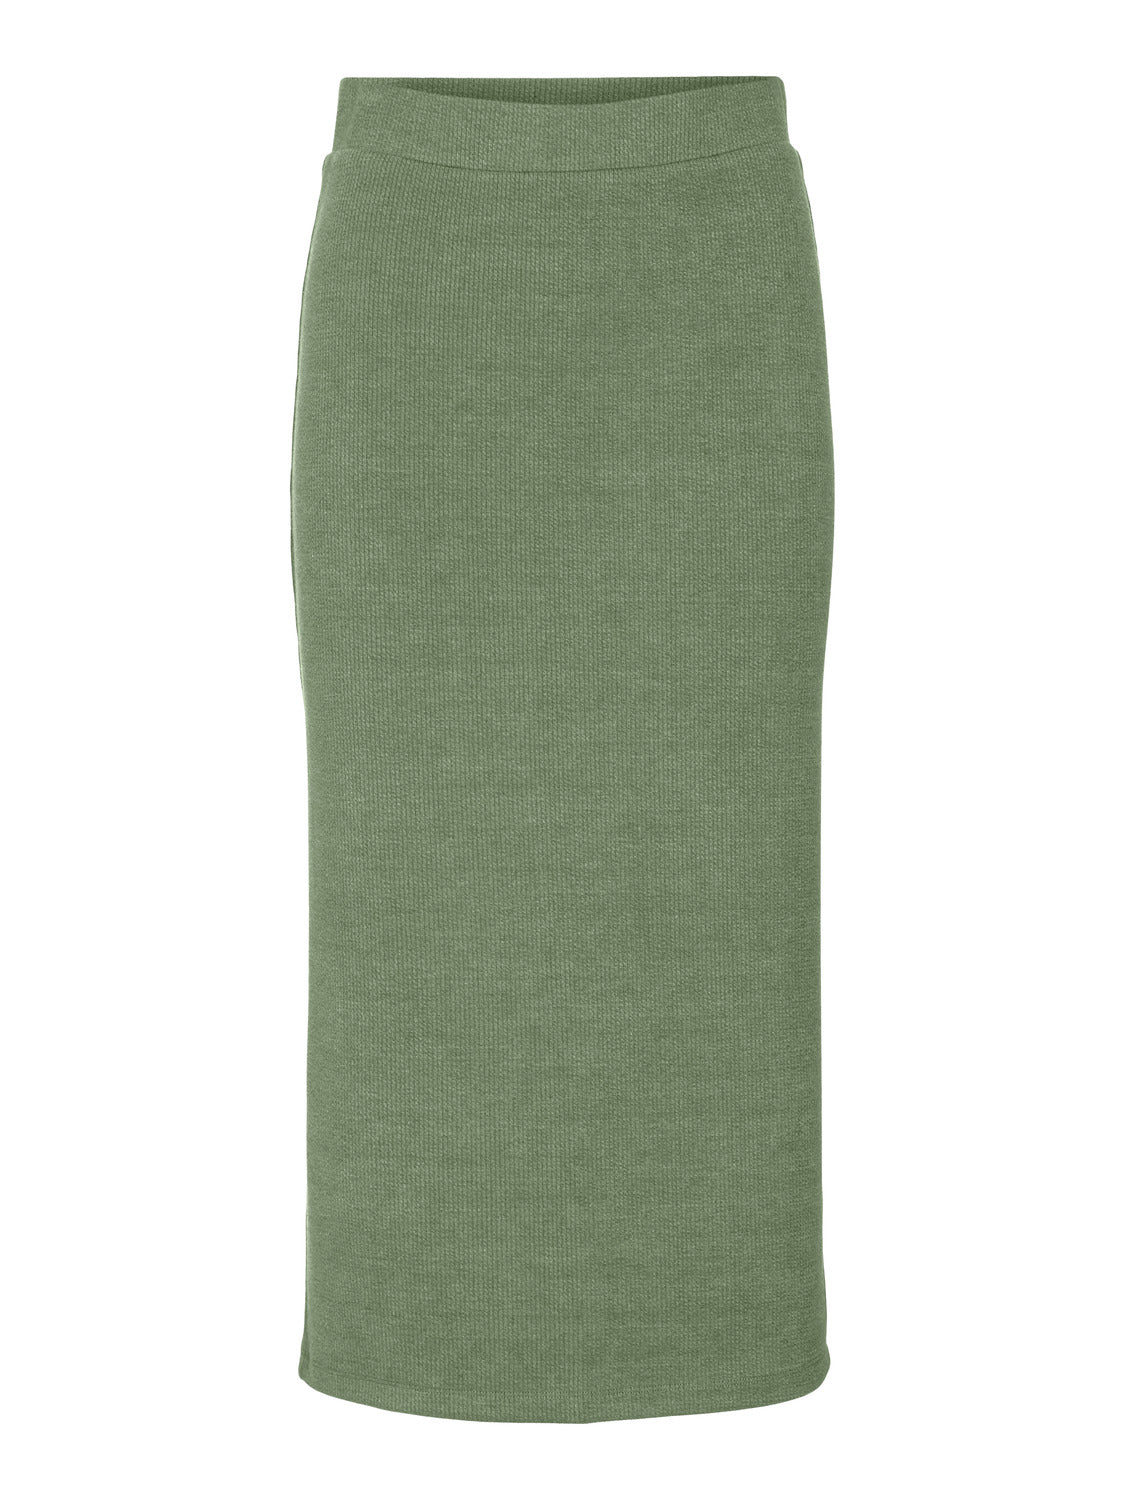 VMALFIE Skirt - Oil Green